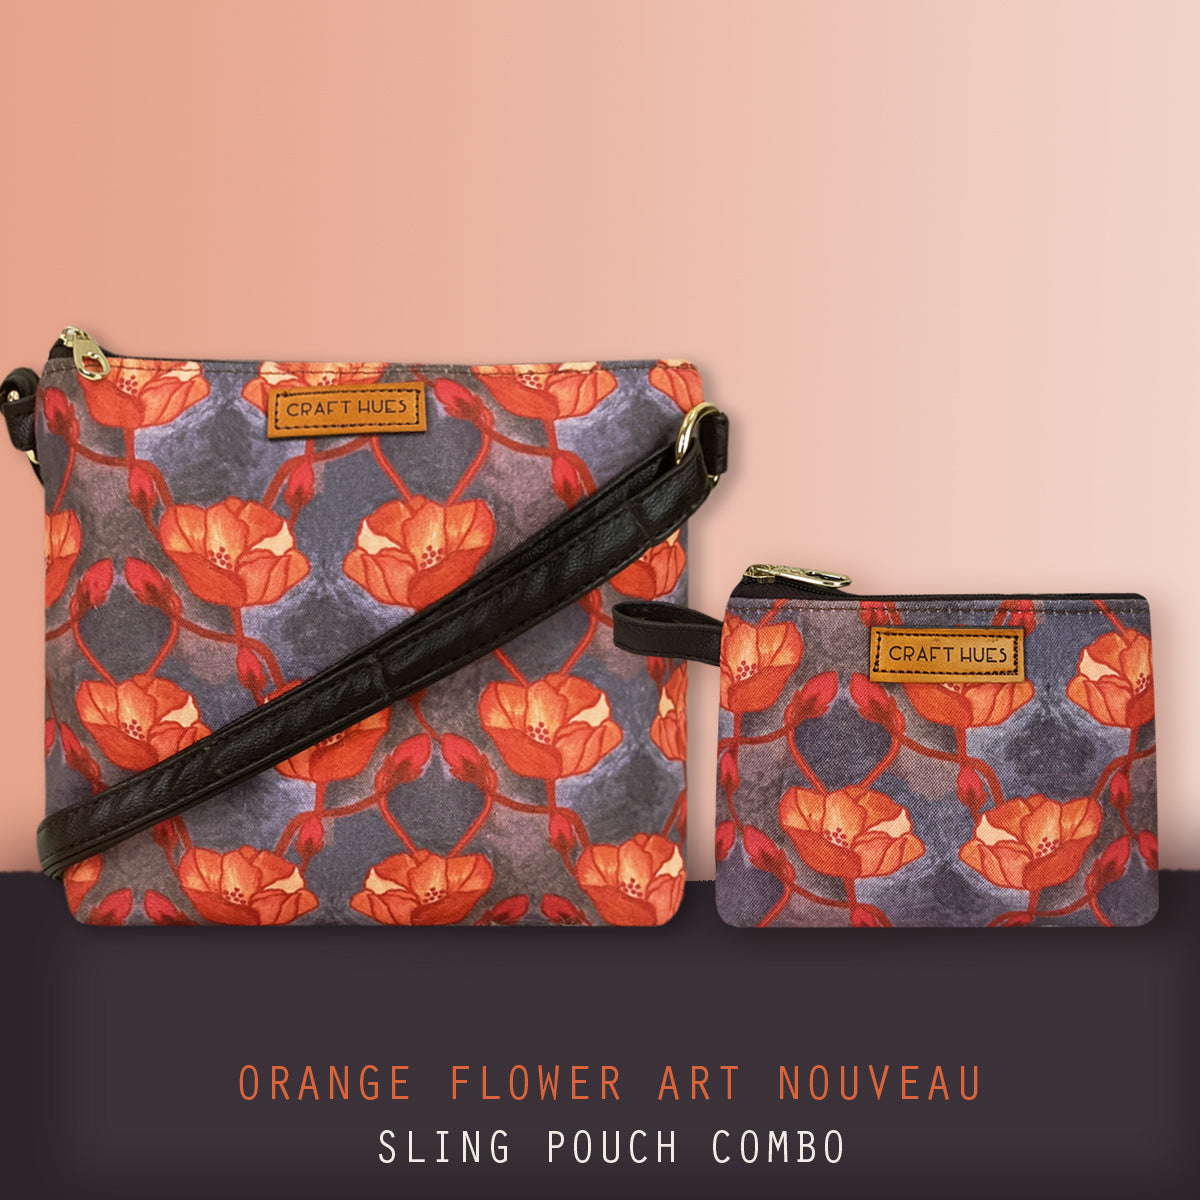 Orange Flower Art Nouveau Sling Pouch Combo